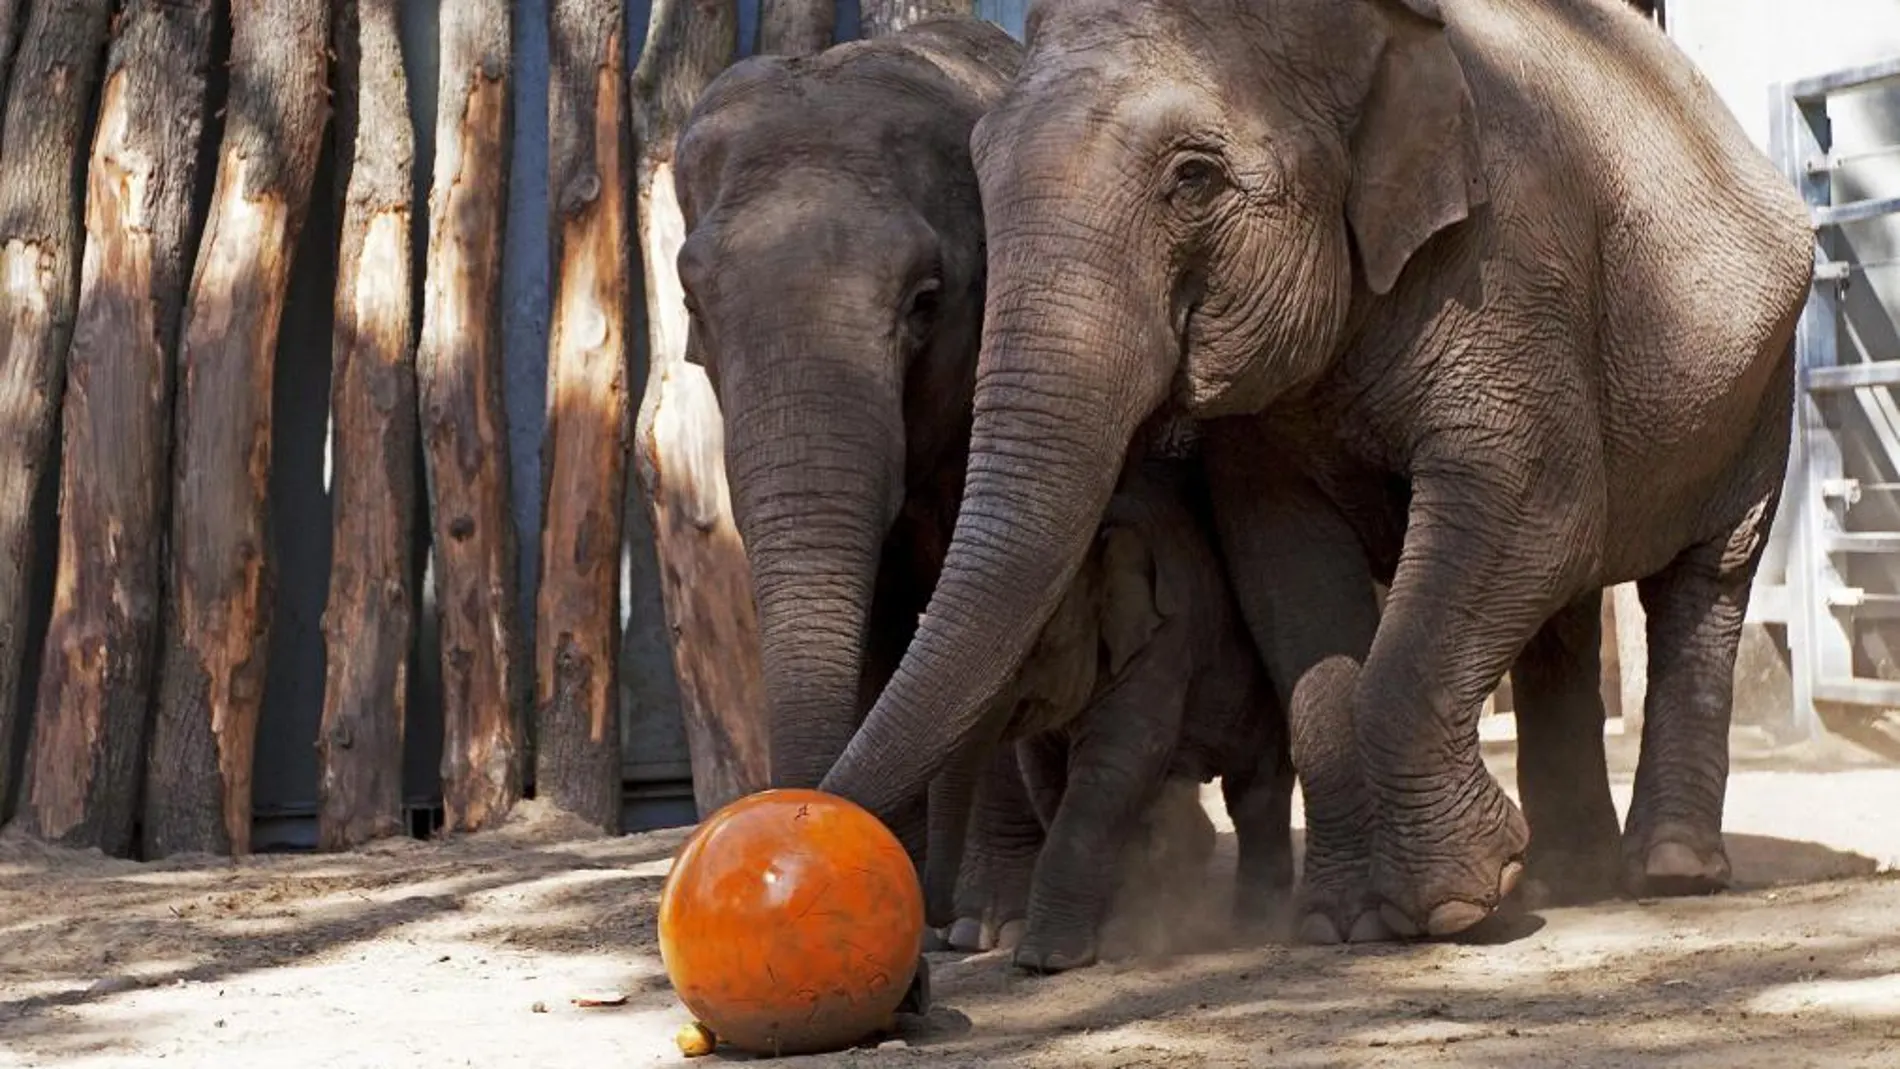 22.000 elefantes han sido abatidos en 2012 en África